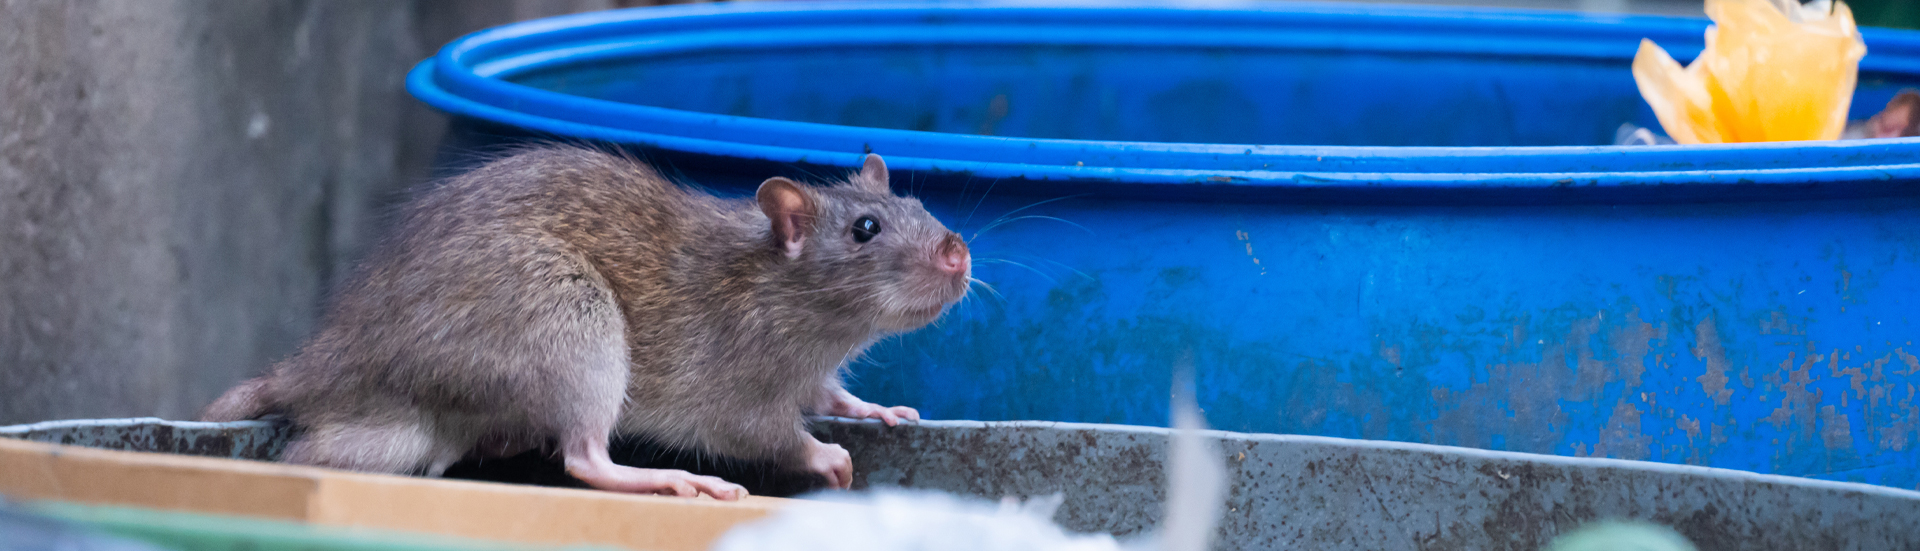 Commercial Mouse Traps  Buy Restaurant Mouse Traps & Commercial Rodent  Traps - DIY Pest Control